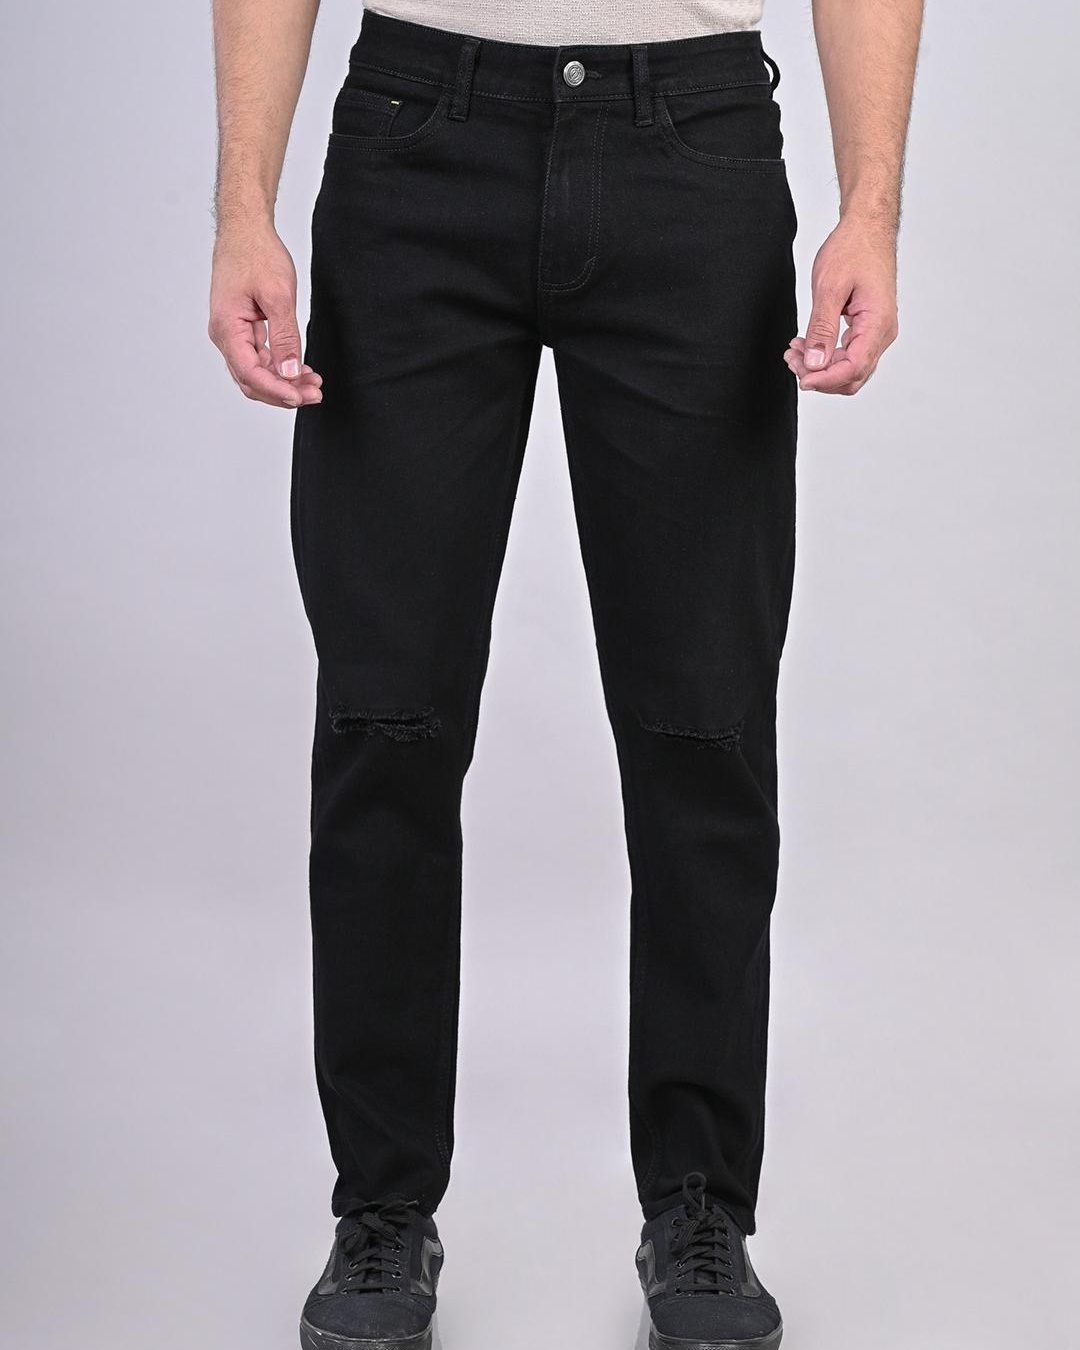 Buy Men's Black Slim Fit Ripped Jeans Online at Bewakoof